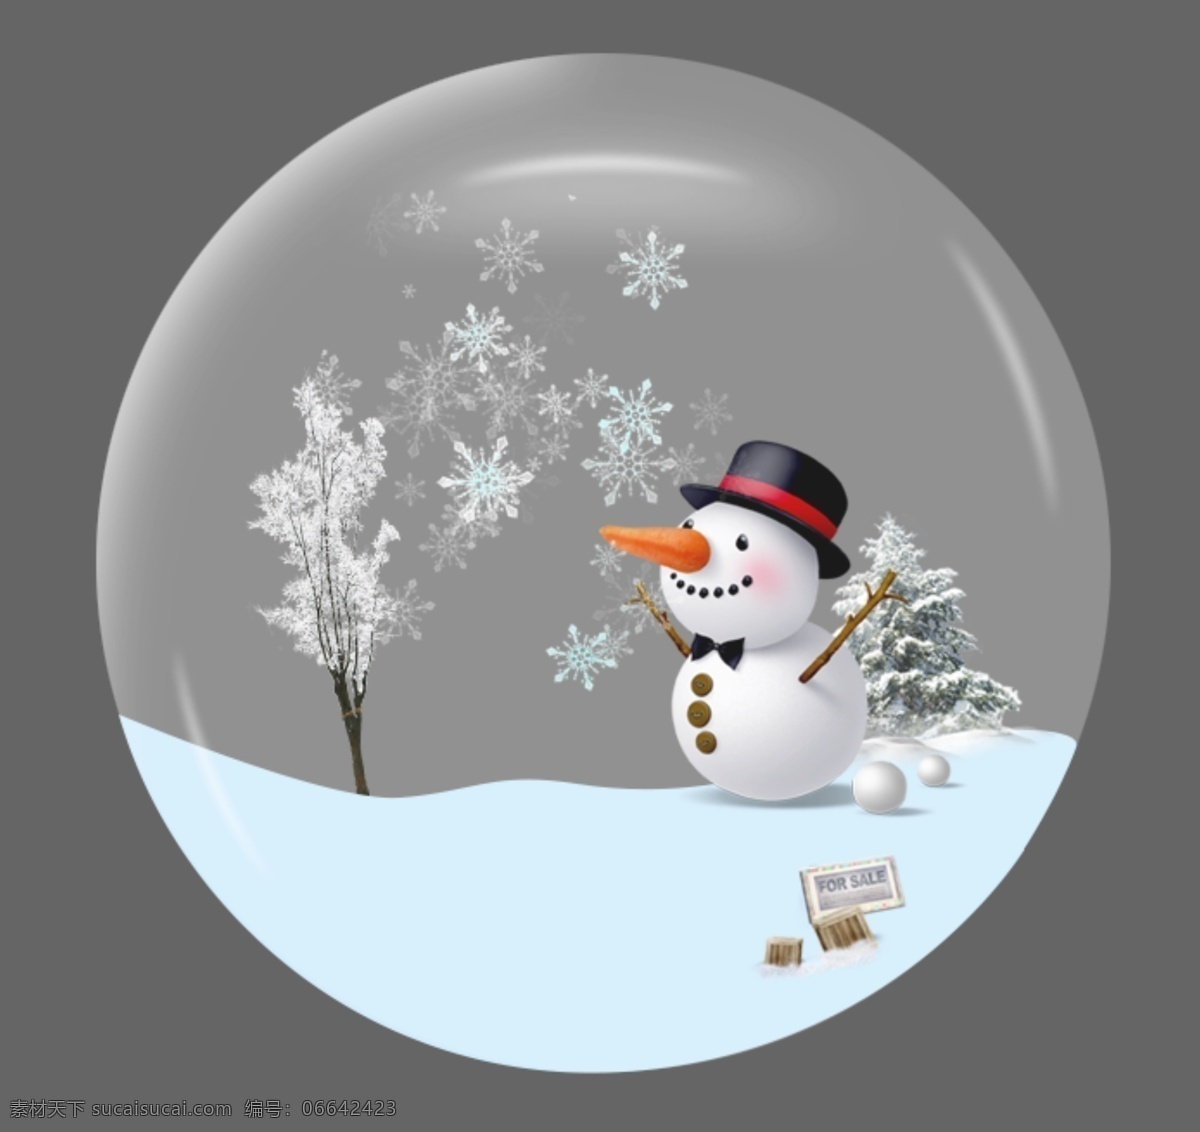 水晶球 雪人 雪花 雪地 开心的笑 飘落的雪 原文件 300分辨率 冬季雪景 装饰品 卡通设计